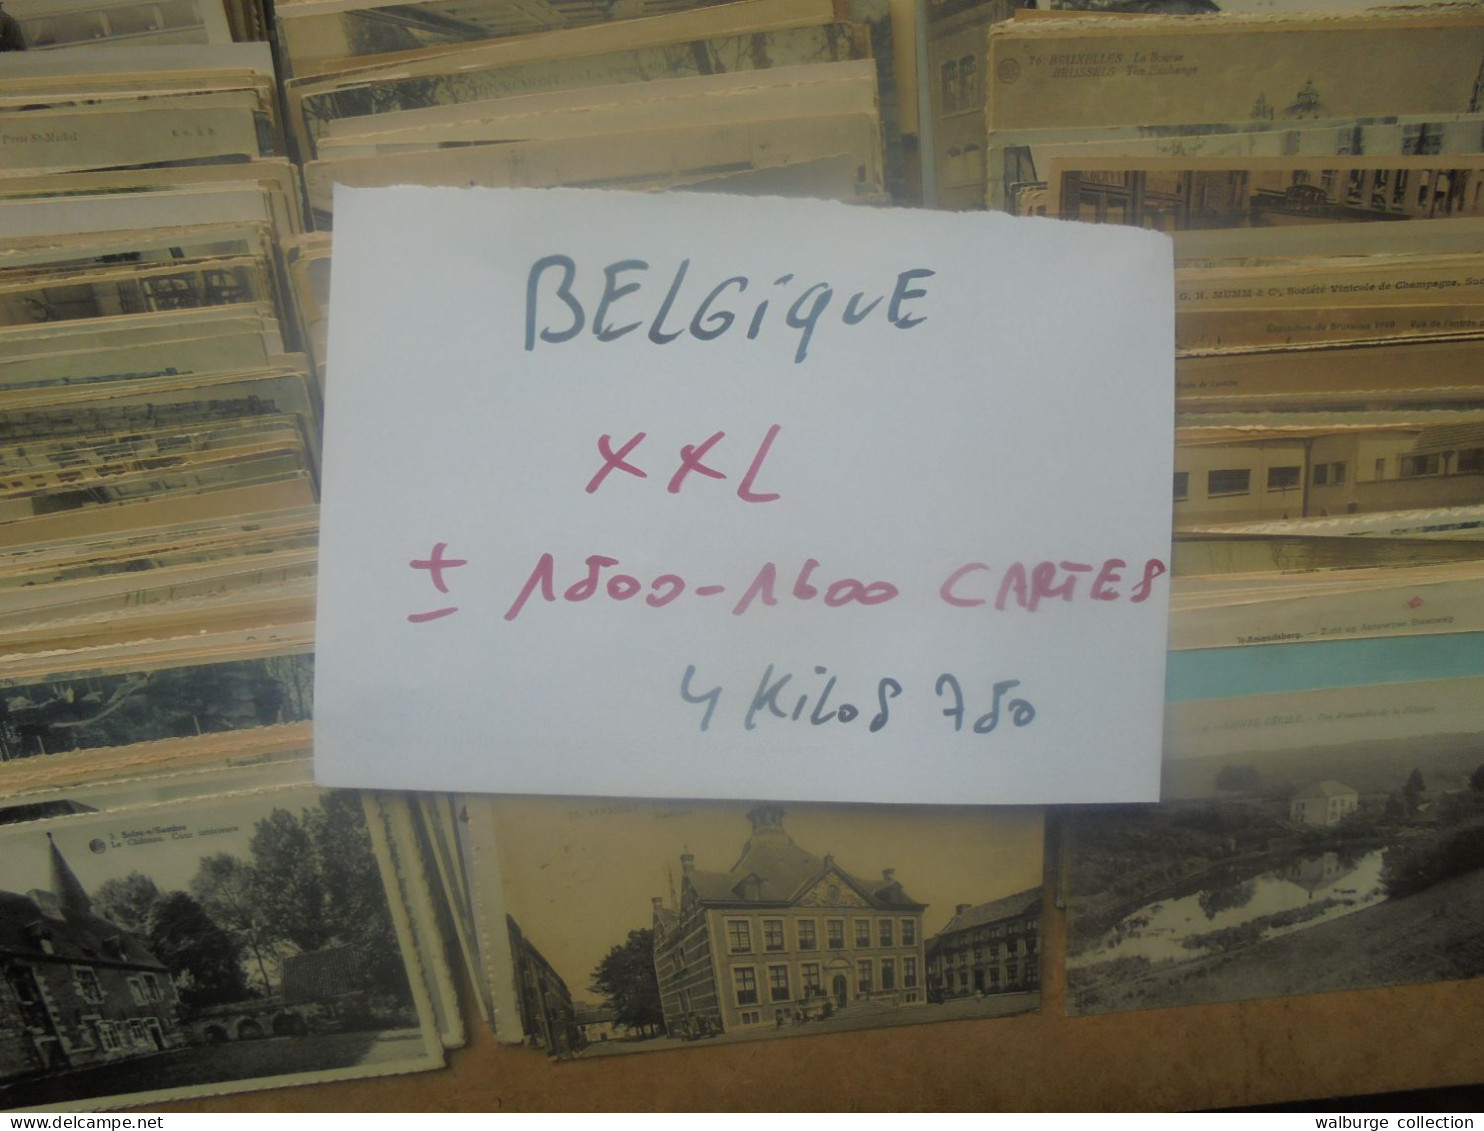 +++BELGIQUE BEAU LOT XXL ! ENVIRON 1500-1600 CARTES (Pas De Côte Belge) MAJORITES ANCIENNES+++ 4 KILOS 750 (Lire Ci-bas) - 500 Postkaarten Min.